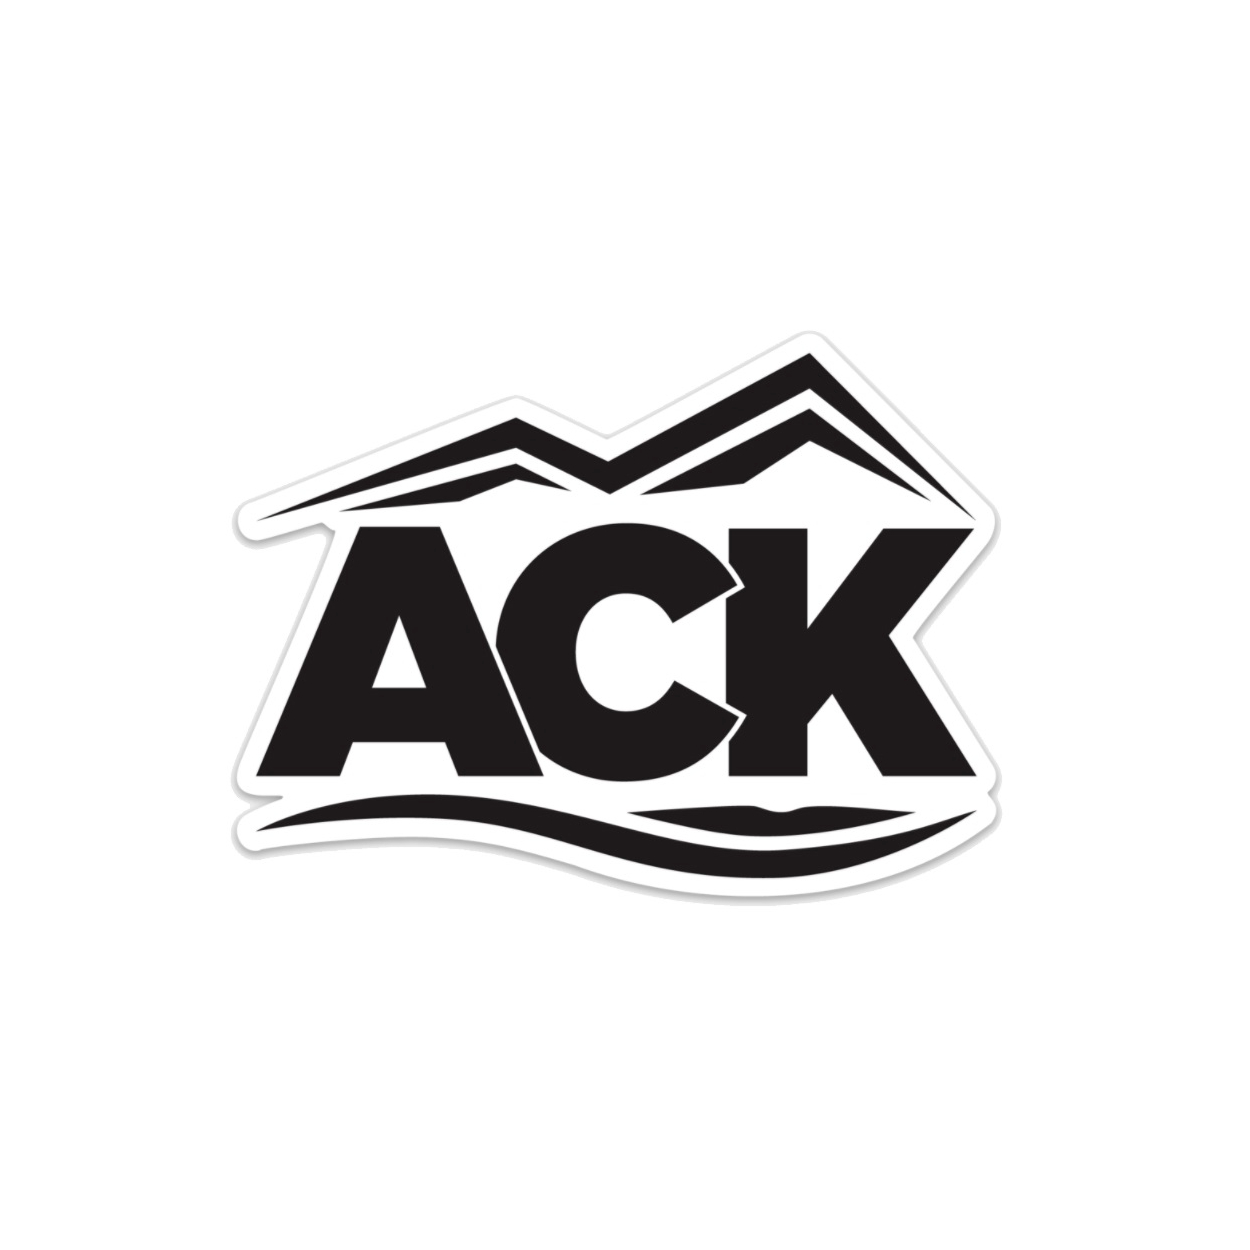 Austin Kayak logo